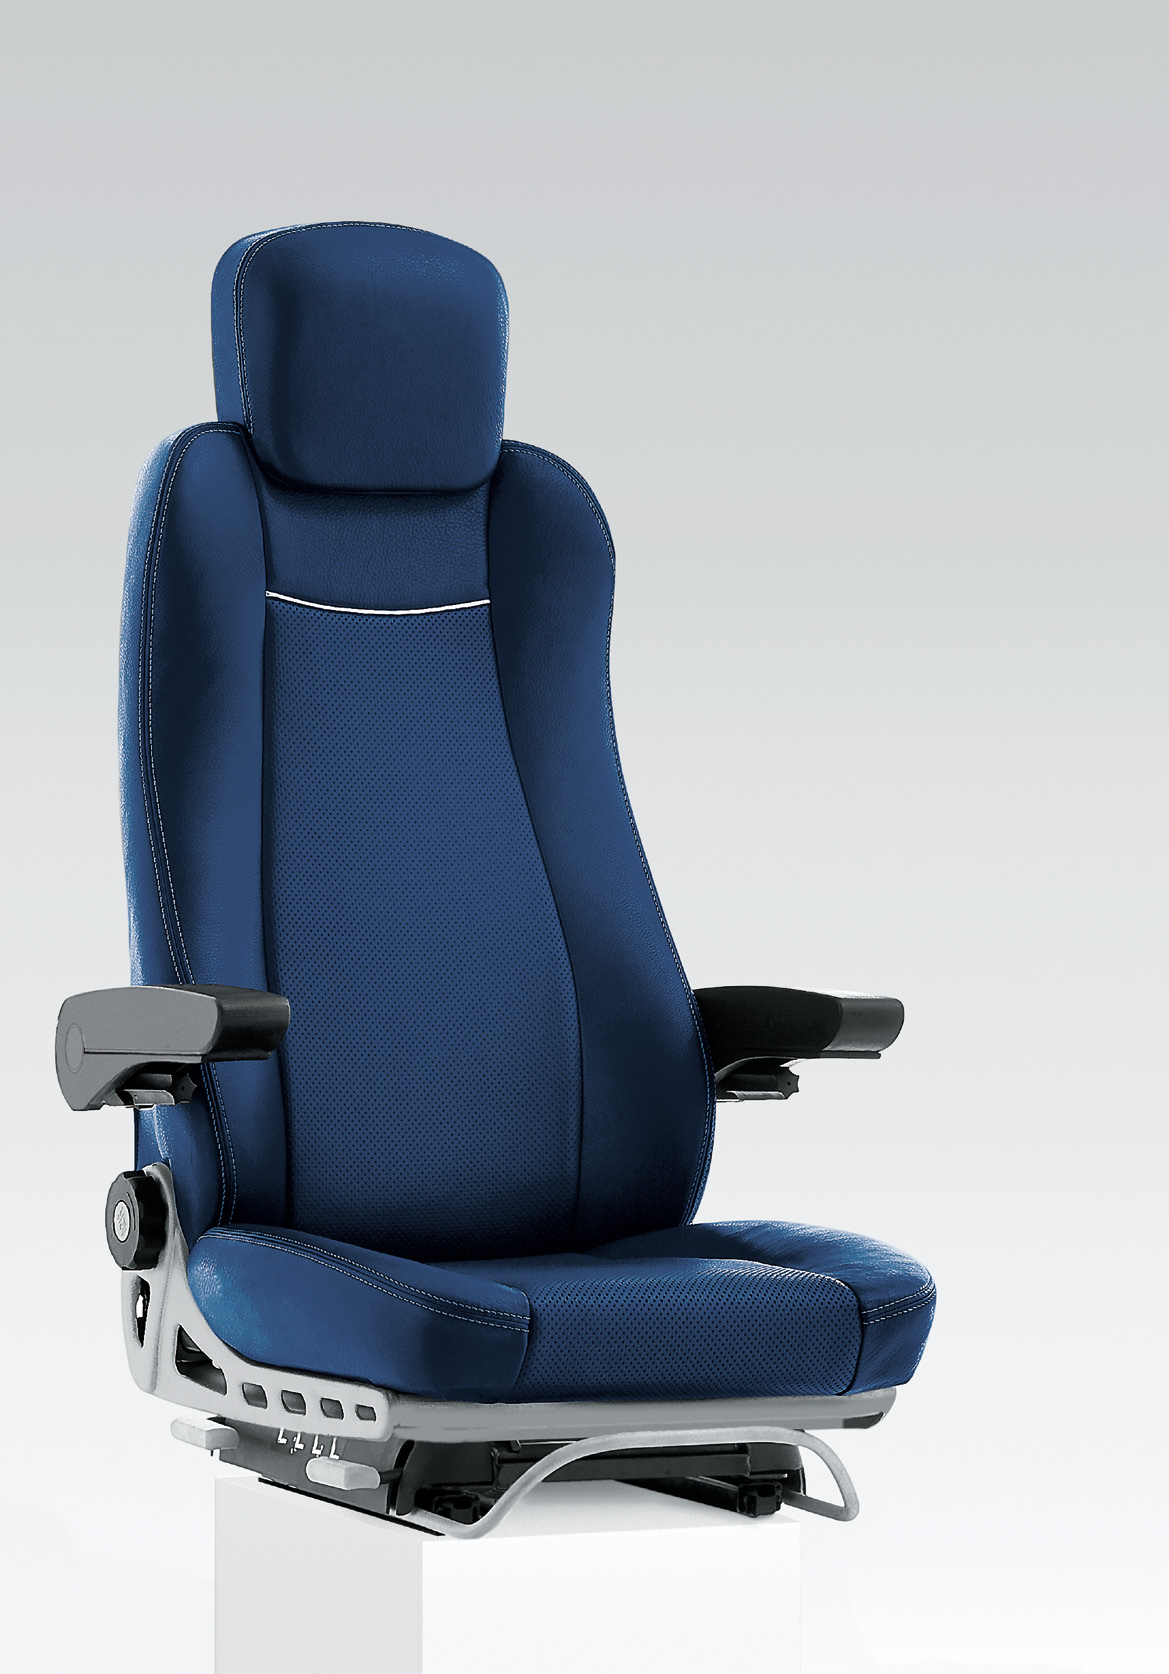 Progettazione di alto livello. SLIM 412 SLIM ROAD è un sedile confortevole e nello stesso tempo molto ridotto nel peso e nelle dimensioni.